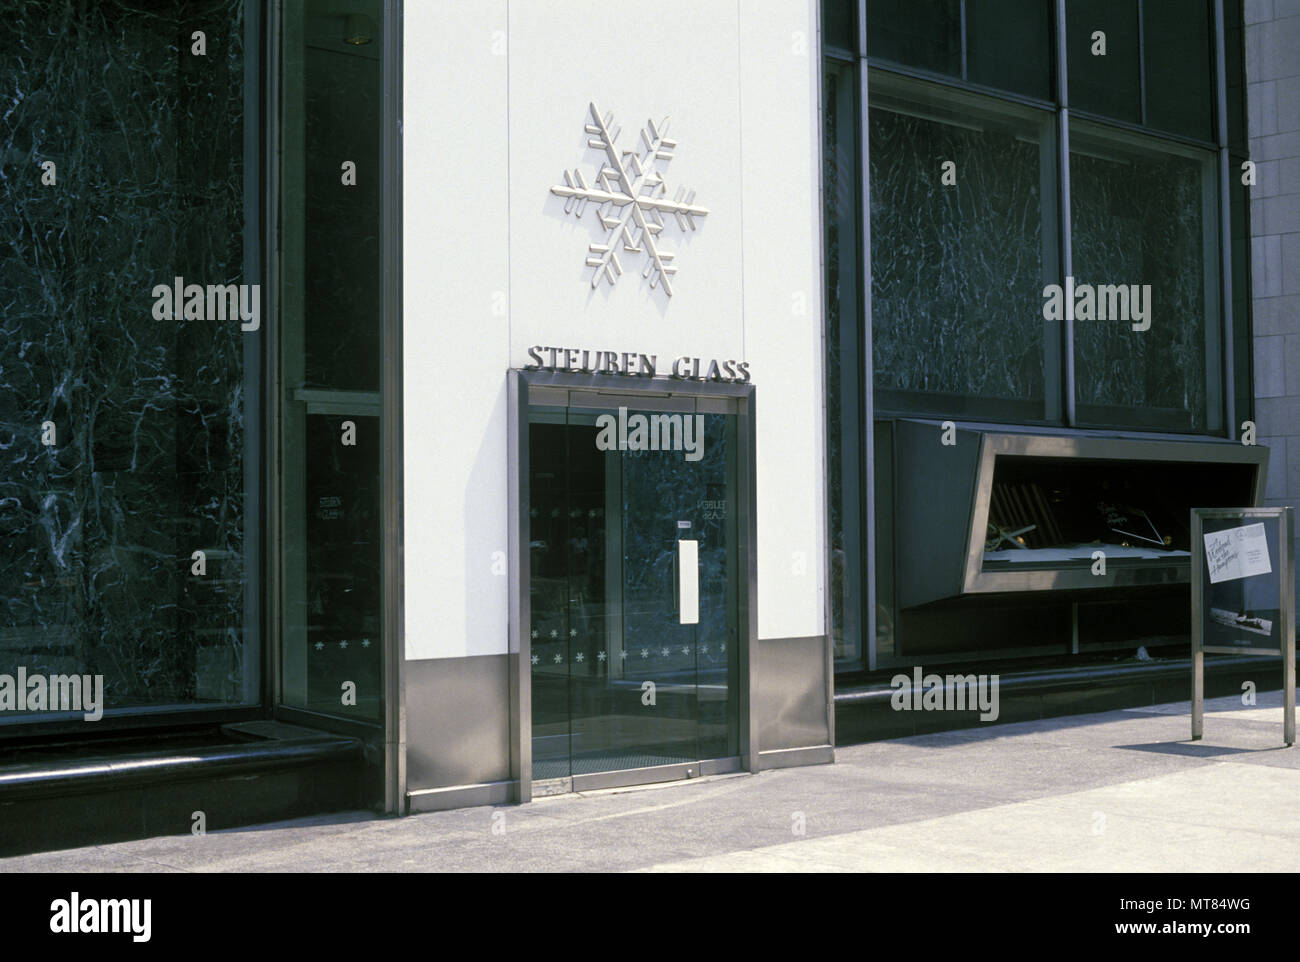 1988 SHOPRFRONT HISTORIQUE STEUBEN GLASS STORE FIFTH AVENUE MANHATTAN NEW YORK USA Banque D'Images